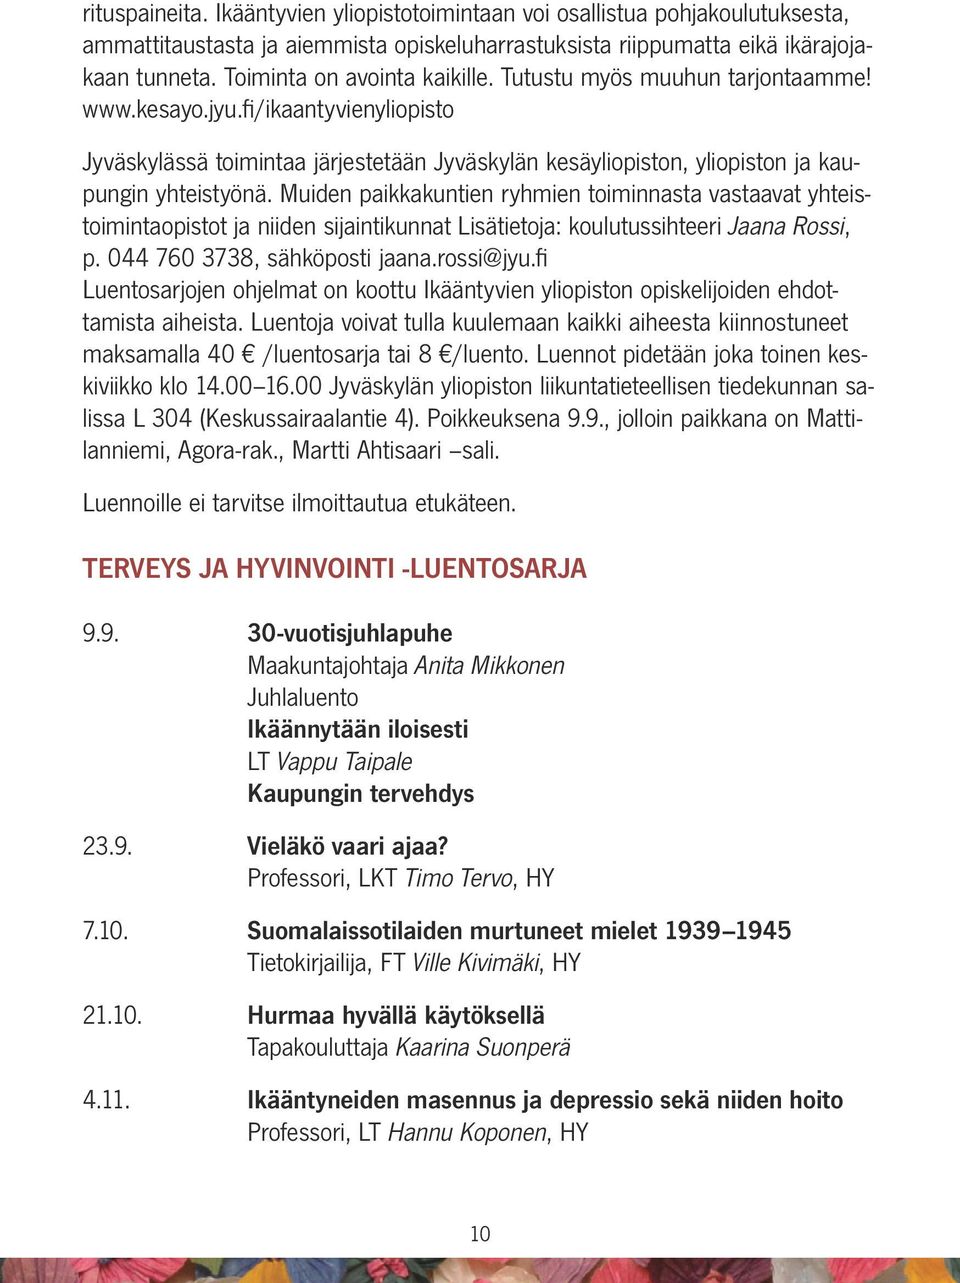 fi/ikaantyvienyliopisto Jyväskylässä toimintaa järjestetään Jyväskylän kesäyliopiston, yliopiston ja kaupungin yhteistyönä.